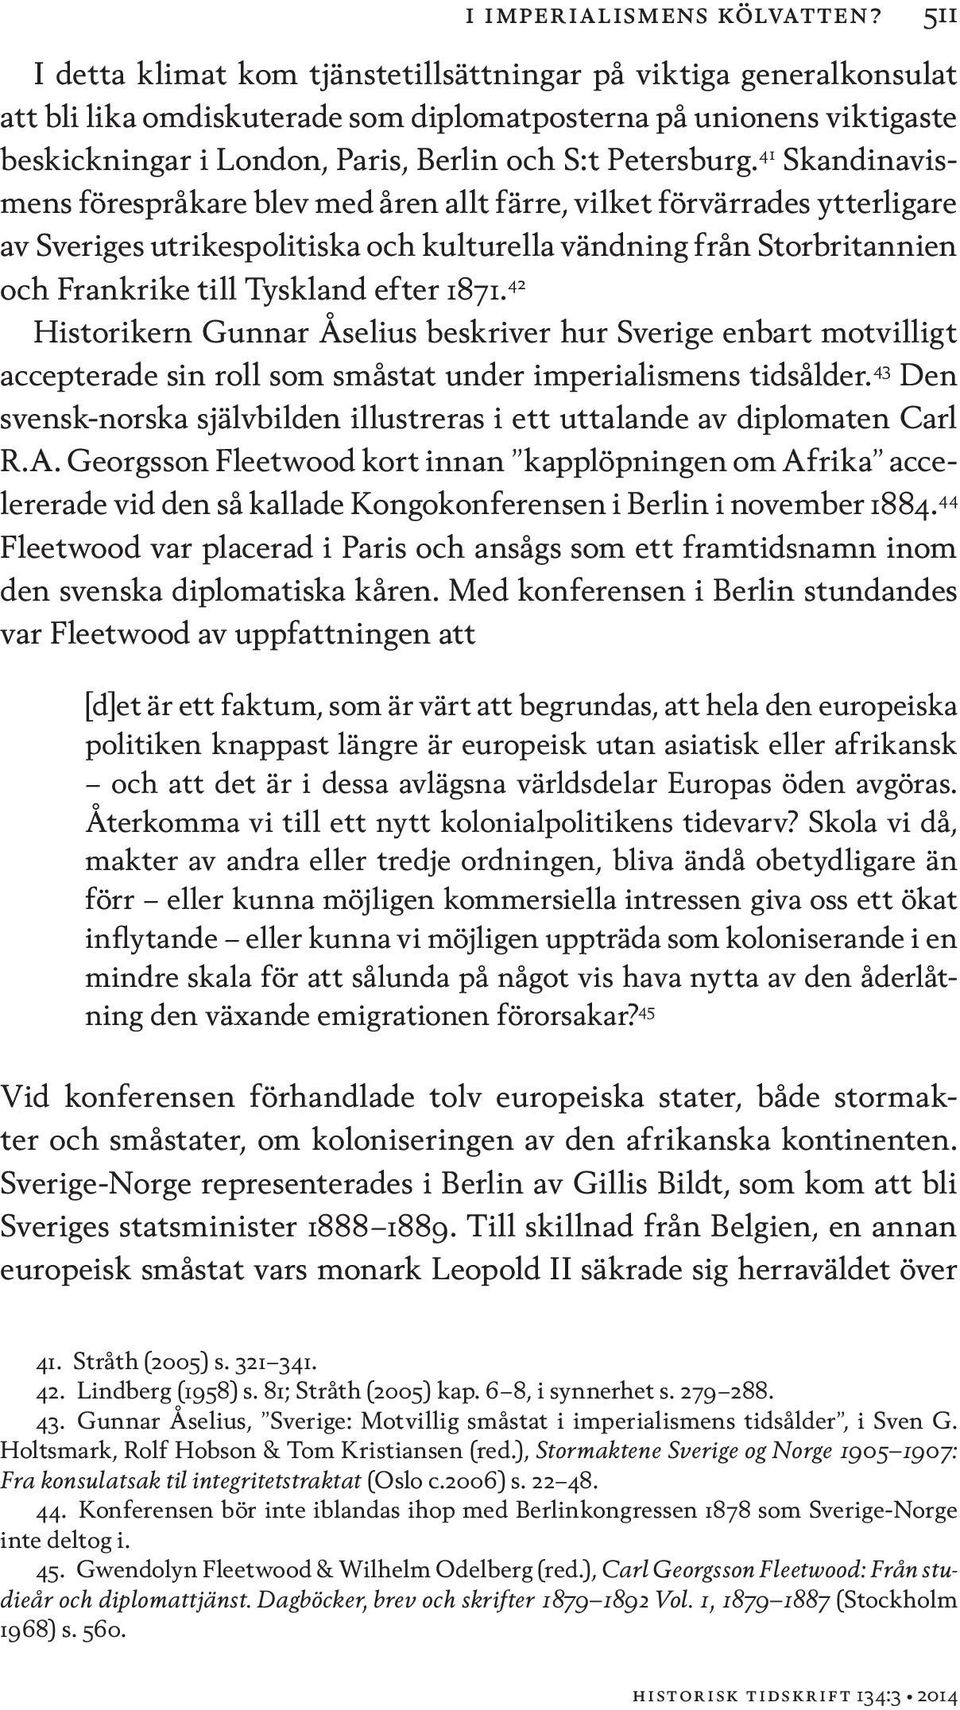 41 Skandinavismens förespråkare blev med åren allt färre, vilket förvärrades ytterligare av Sveriges utrikespolitiska och kulturella vändning från Storbritannien och Frankrike till Tyskland efter